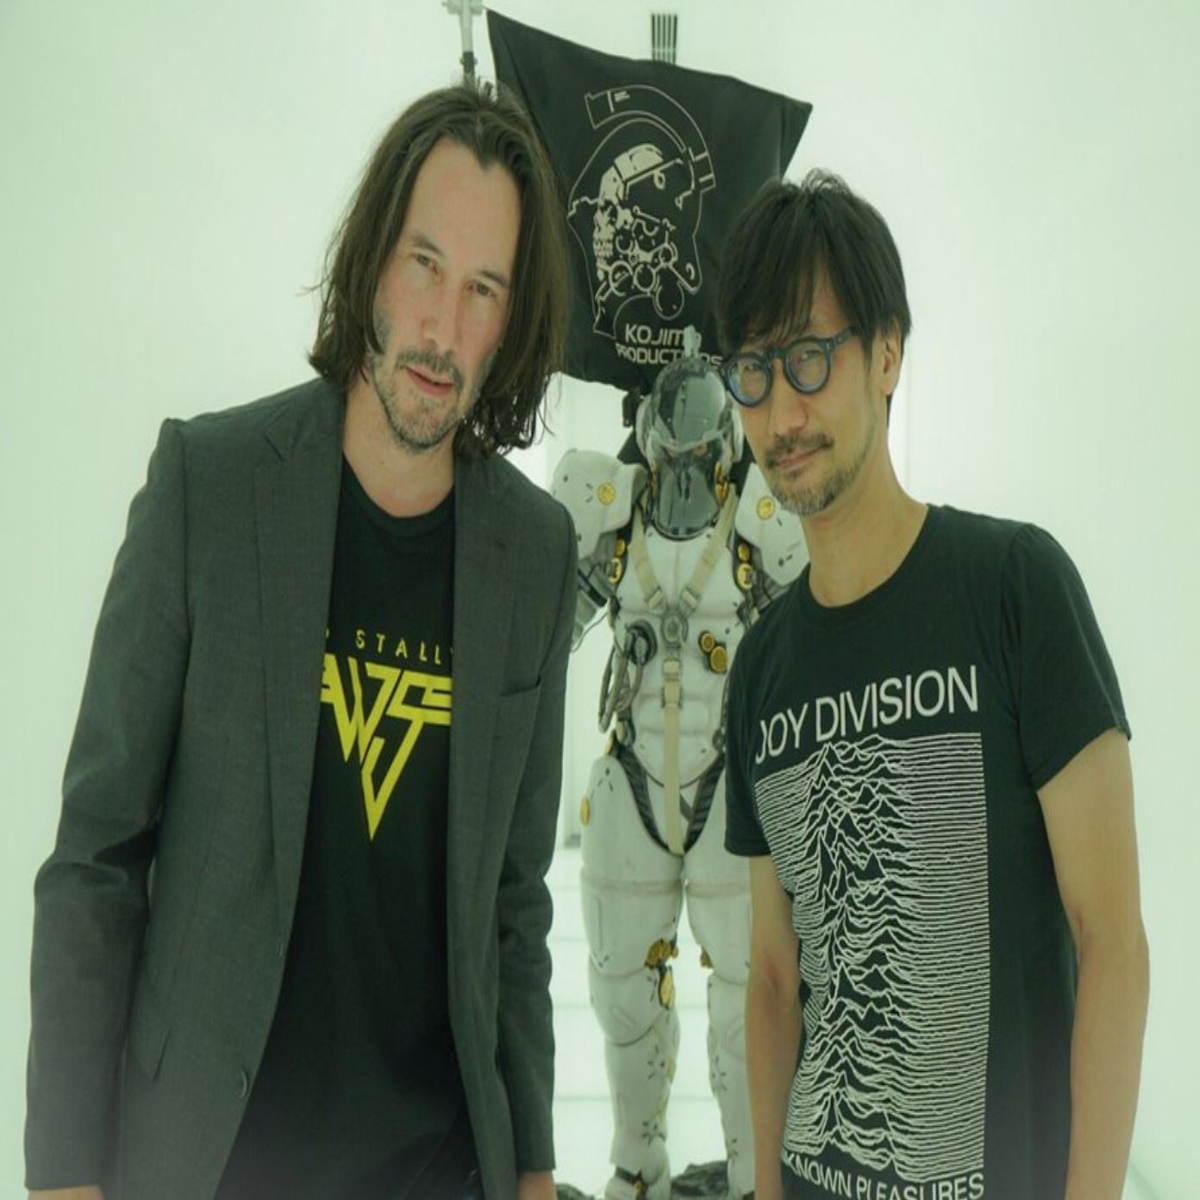 Hideo Kojima nega ser o diretor do filme de Death Stranding